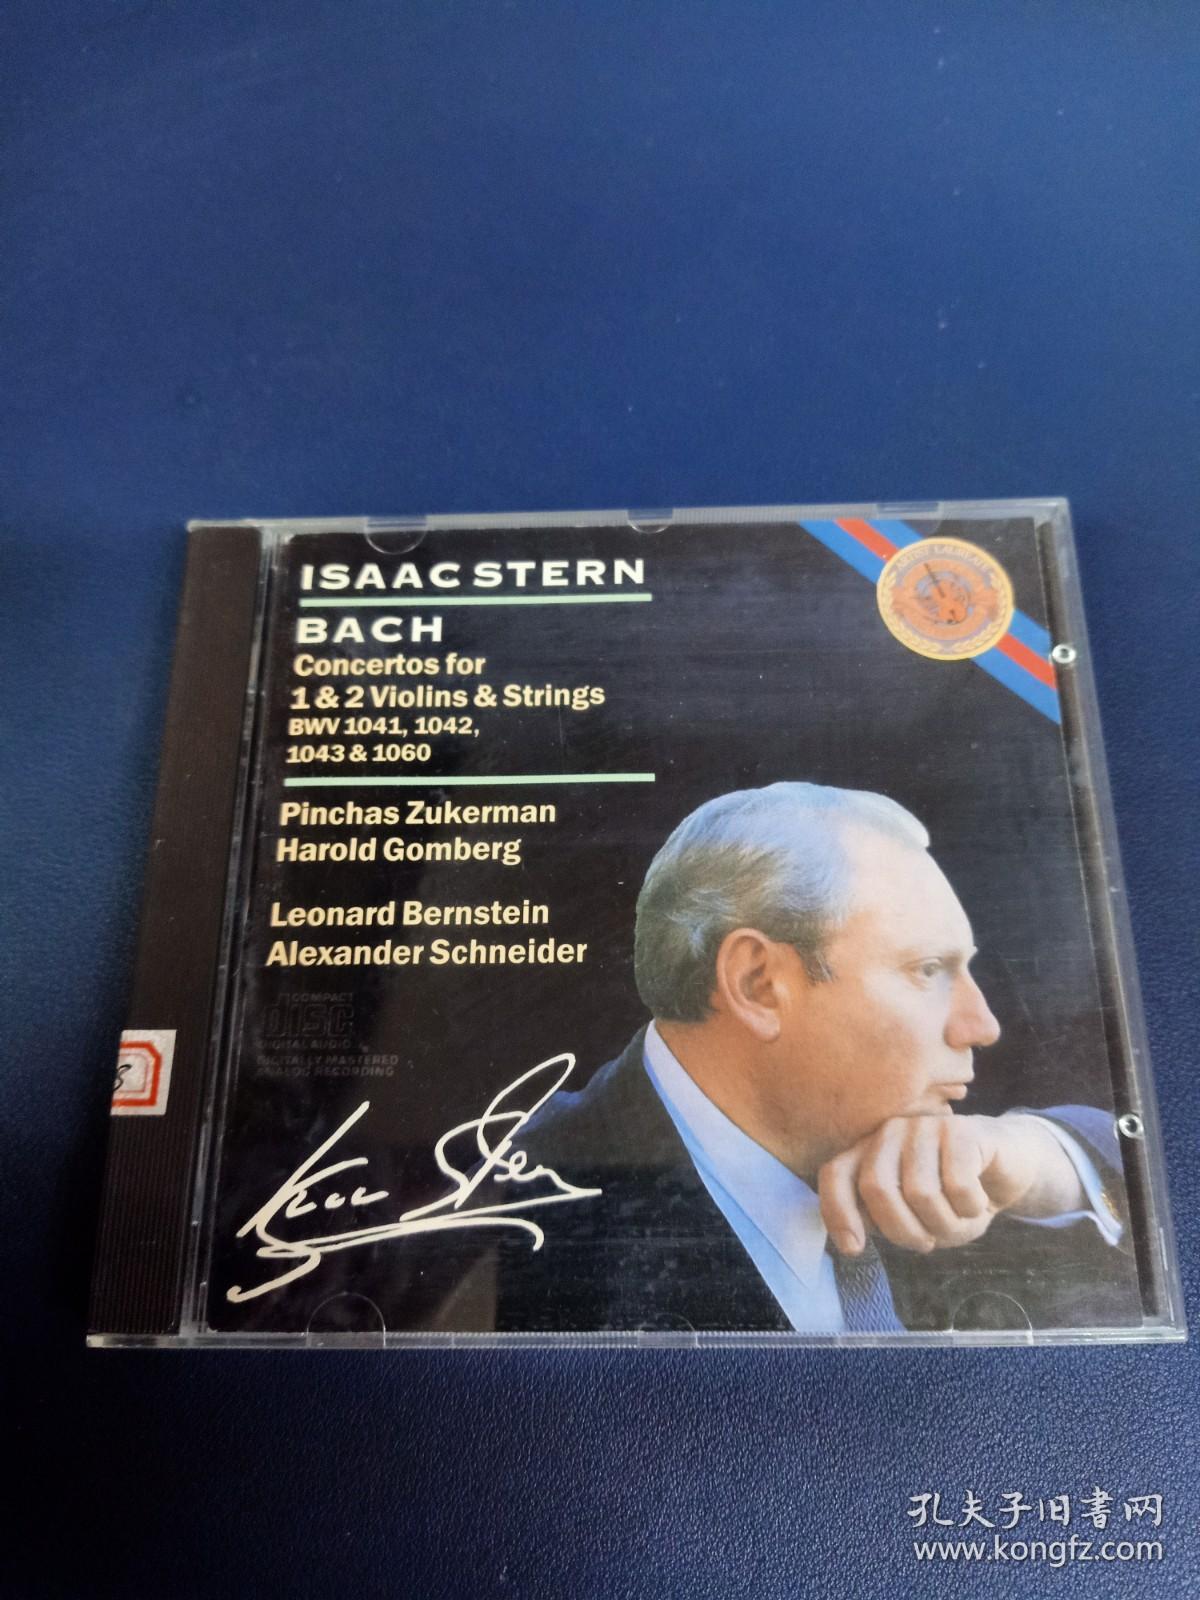 外版CD，斯坦恩（Stern）演奏，伯恩斯坦指挥纽约爱乐乐团版，巴赫两首小提琴协奏曲(BWV1041 、 1042 ）和一首双小提琴协奏曲(BWV1043)，以及《D 小调小提琴或双簧管的协奏曲》。1987年CBS英国压片。